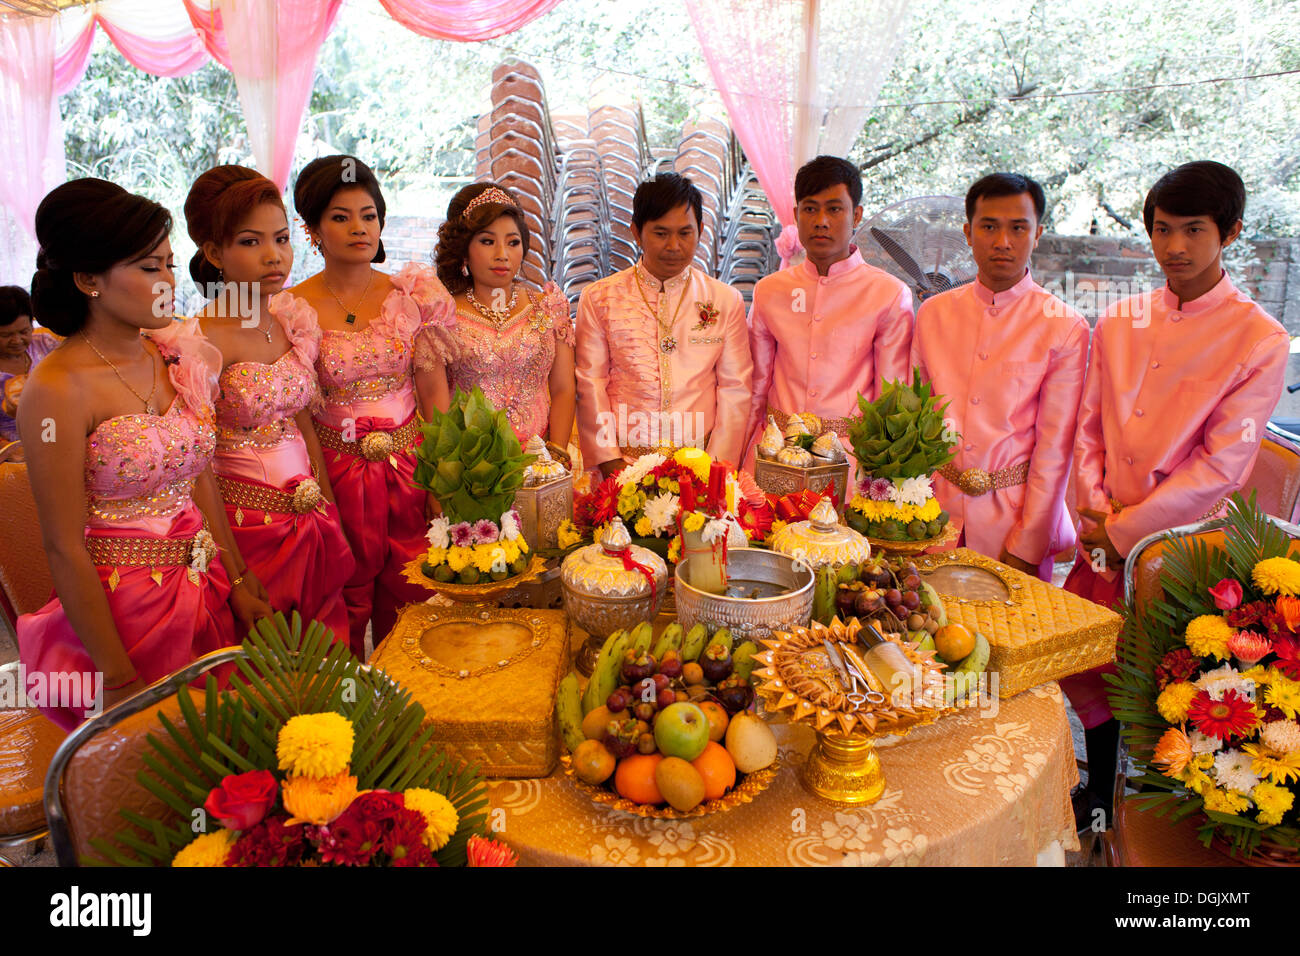 Cambogia Southeast Asia Asia SE phnom penh il viaggio di nozze gruppo buddista di persone di colore celebrazione immagine cambogia etnia pi Foto Stock